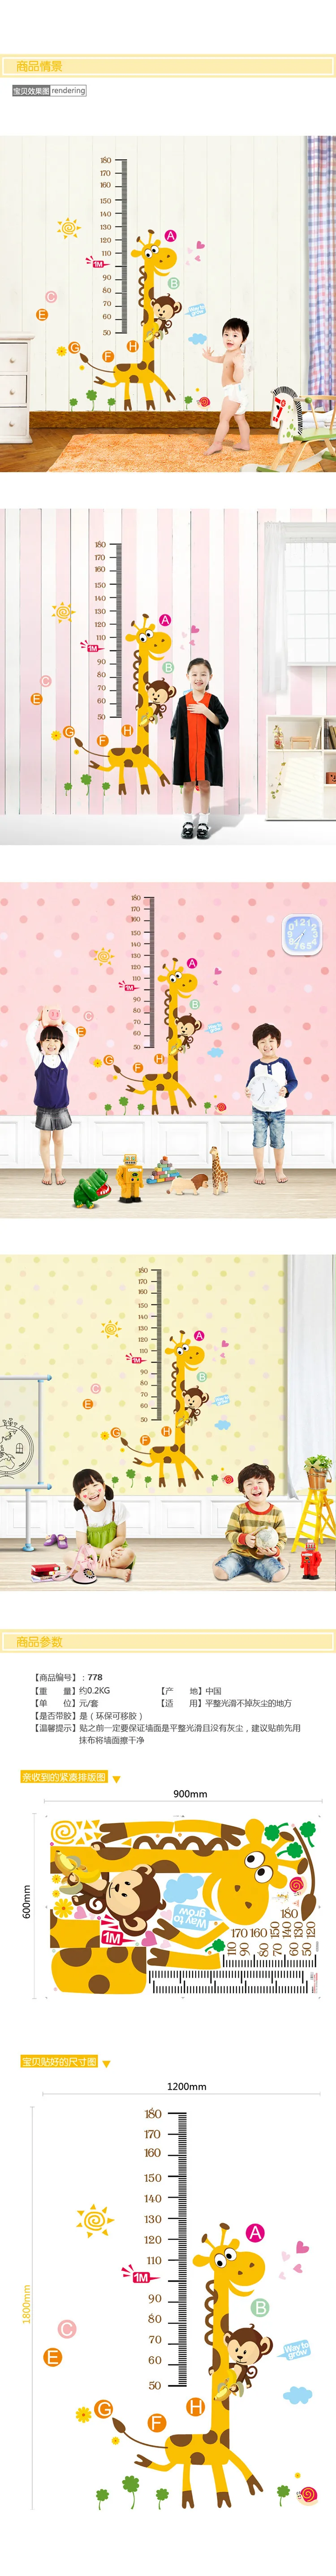 Диаграммы роста ребенка мультфильм высота измерительная линейка передвижная стена из ПВХ стикер для детей комната для мальчиков и девочек украшения ремесла